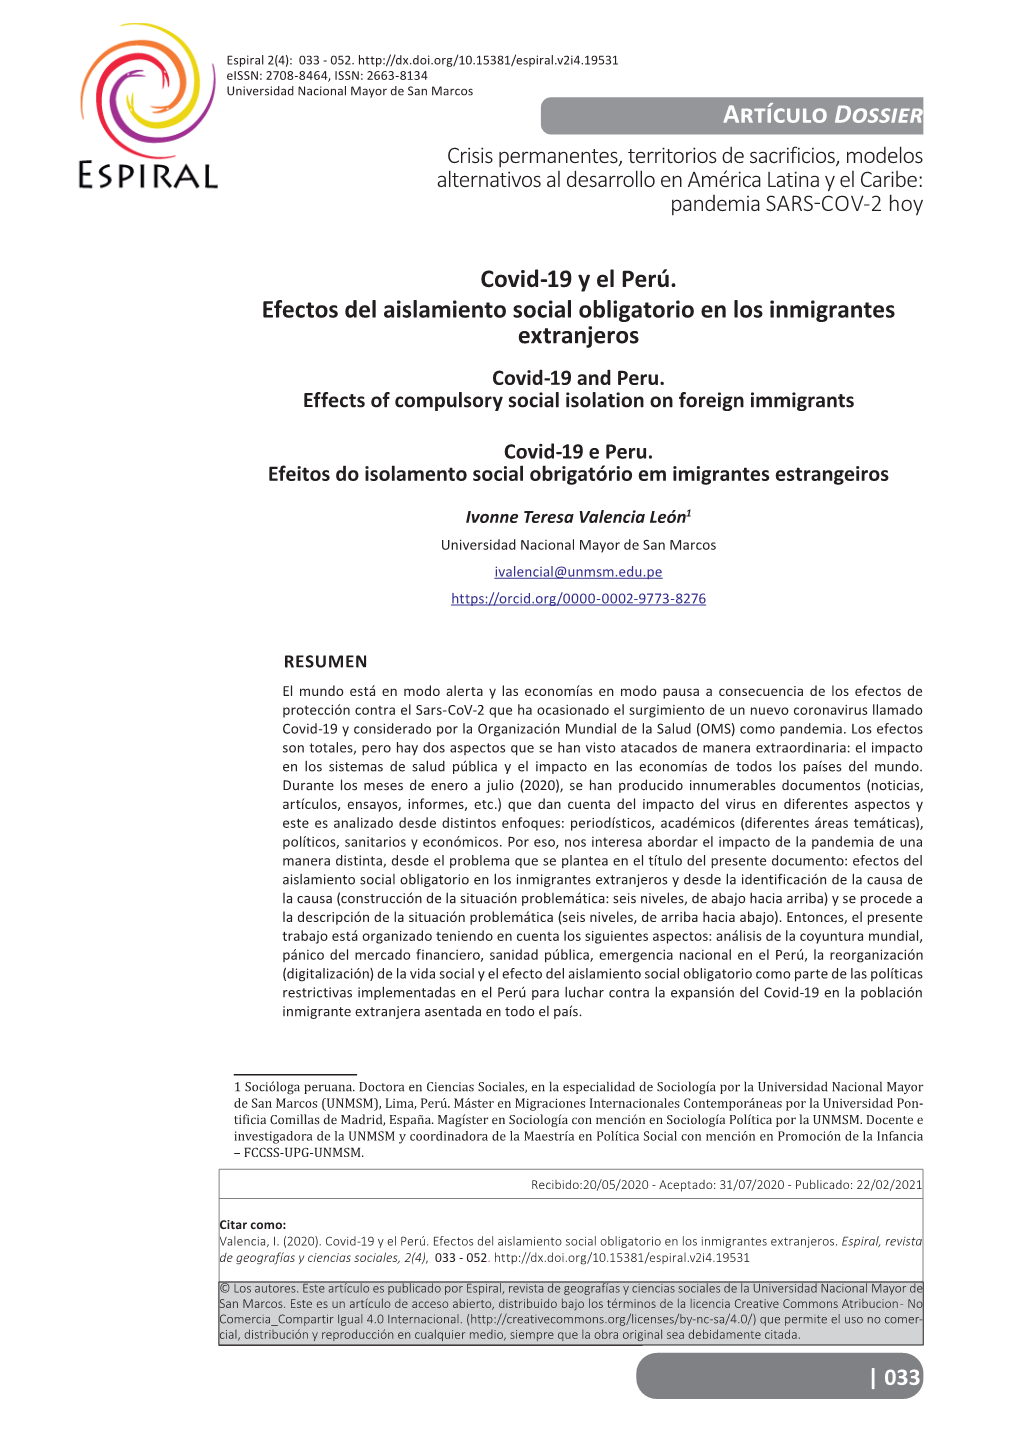 Artículo Dossier Crisis Permanentes, Territorios De Sacrificios, Modelos Alternativos Al Desarrollo En América Latina Y El Caribe: Pandemia SARS-COV-2 Hoy